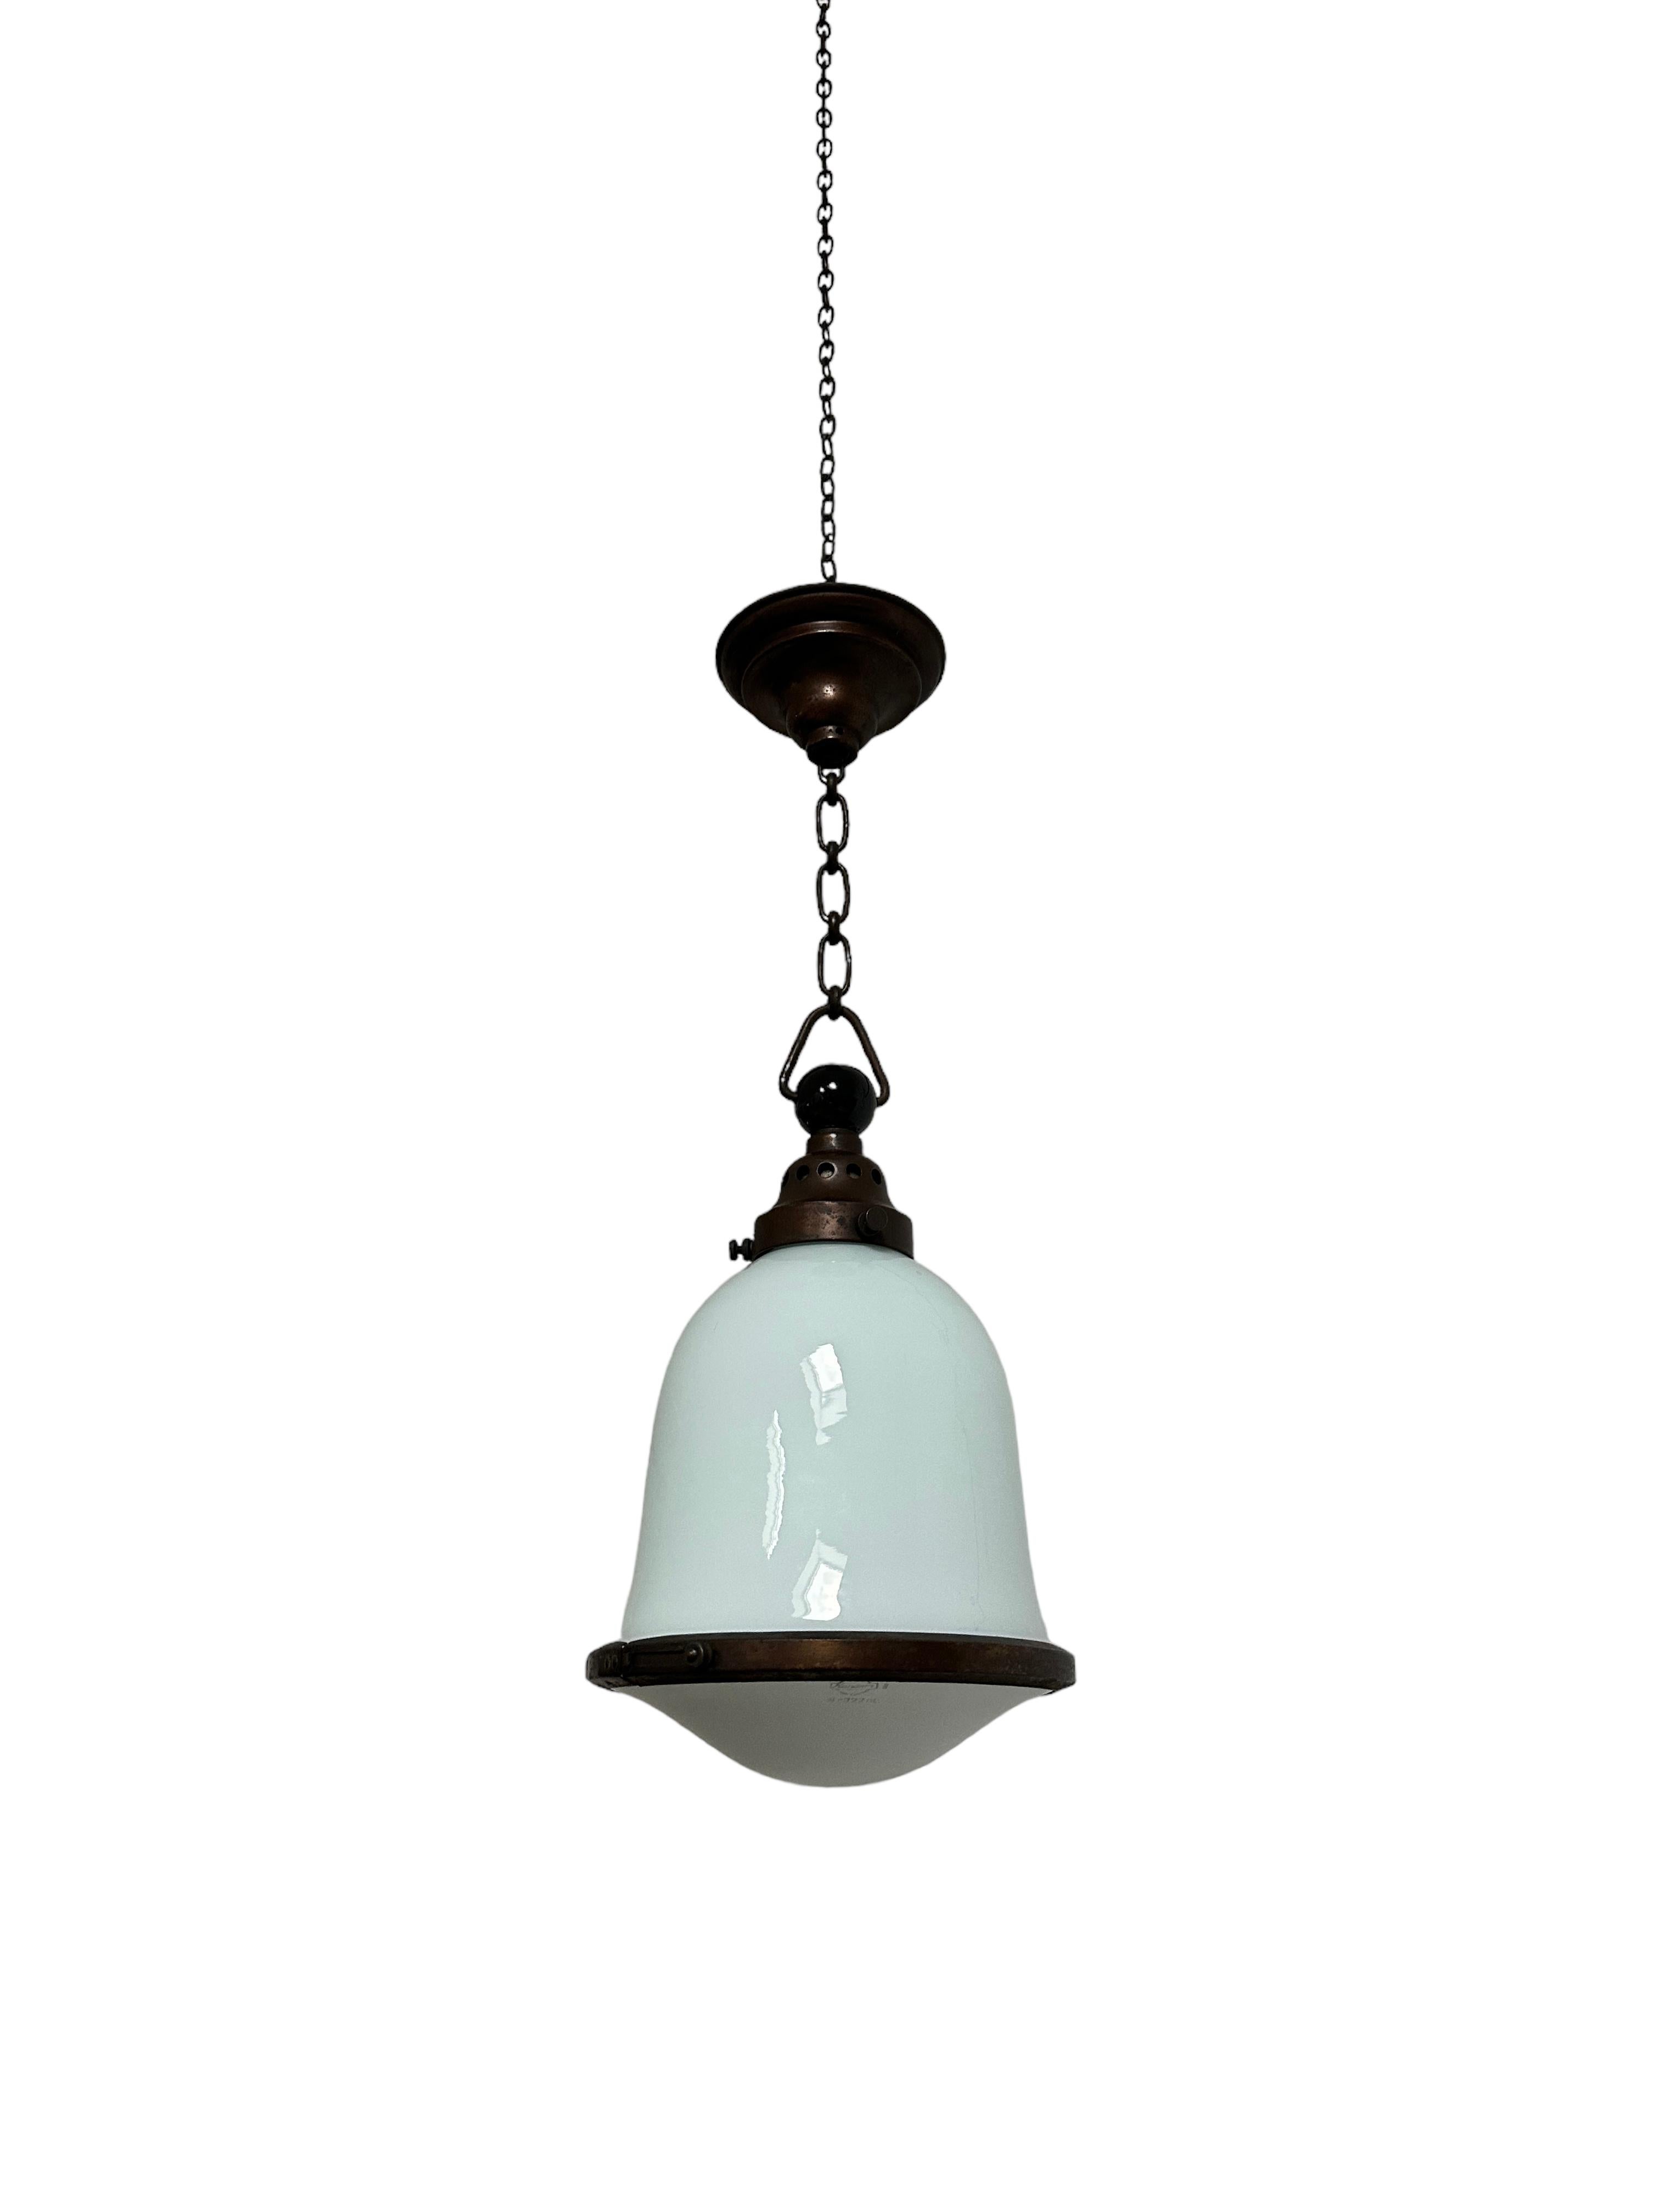 20th Century Antique Vintage Bauhaus Kandem Opaline Milk Glass Ceiling Pendant Light Lamp